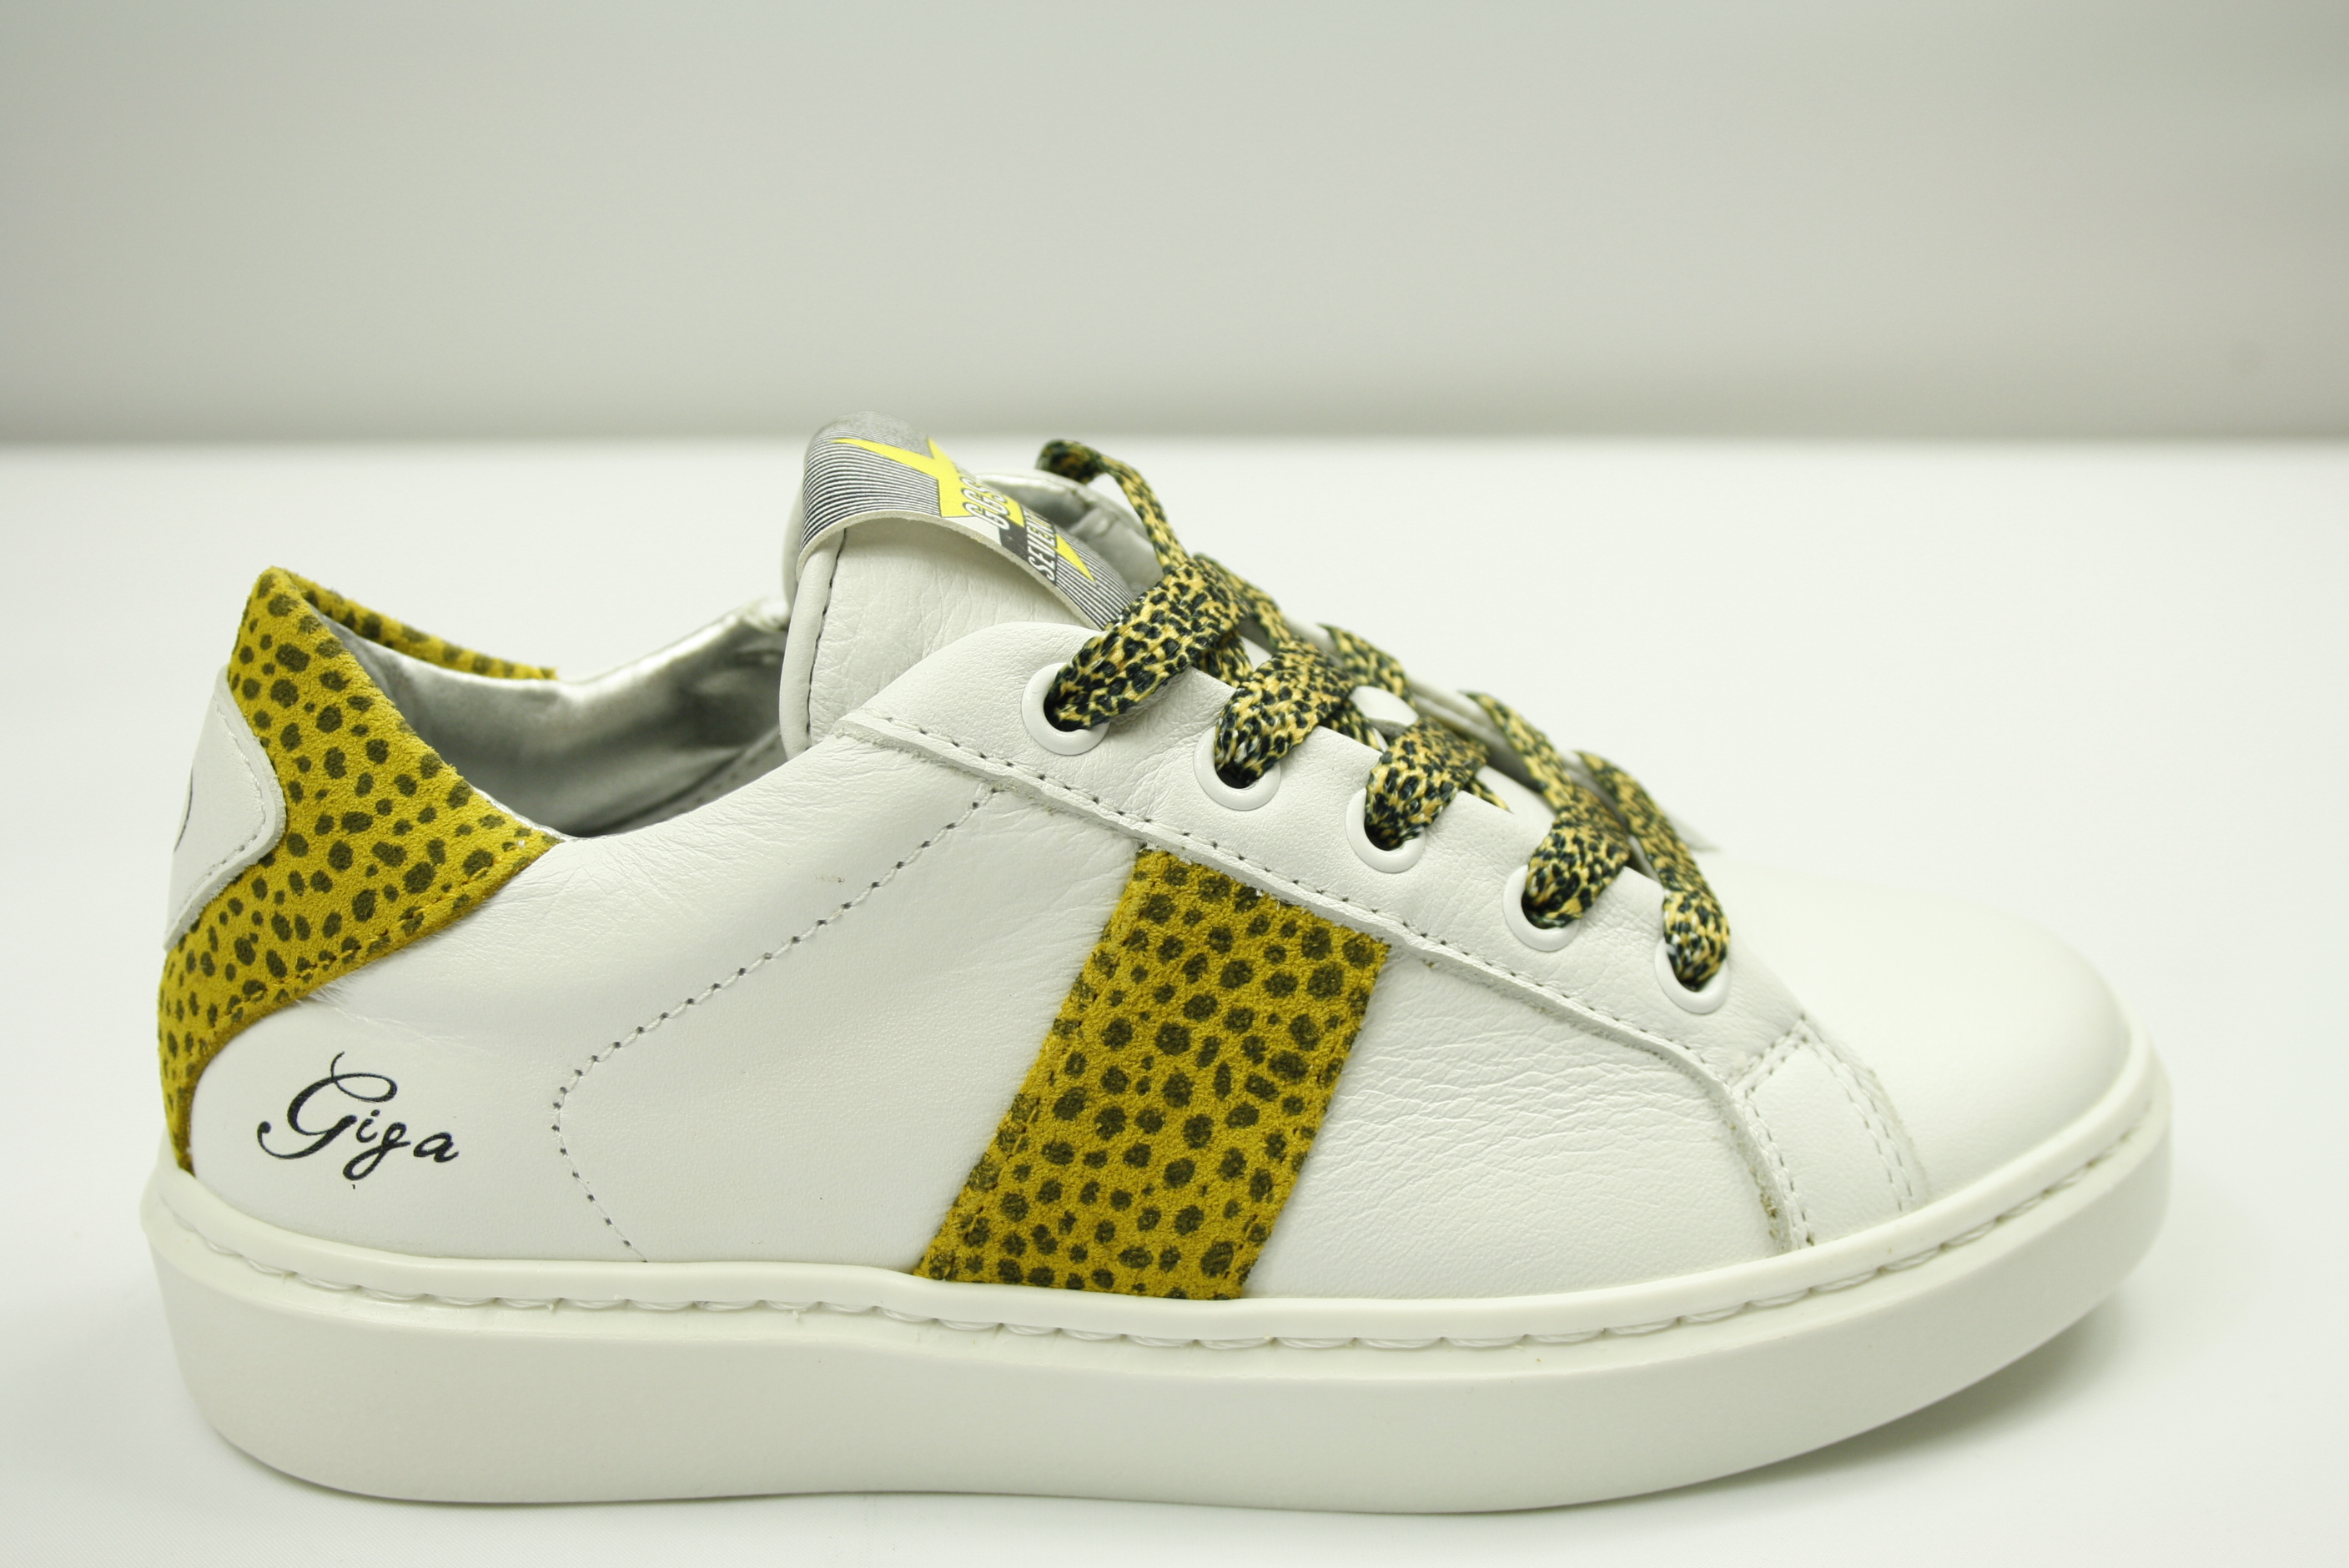 De Schoenen van mijn Zus | Giga smalle meisjes sneaker met rits wit / geel / panter print . Nieuwe collectie - De Schoenen van mijn Zus